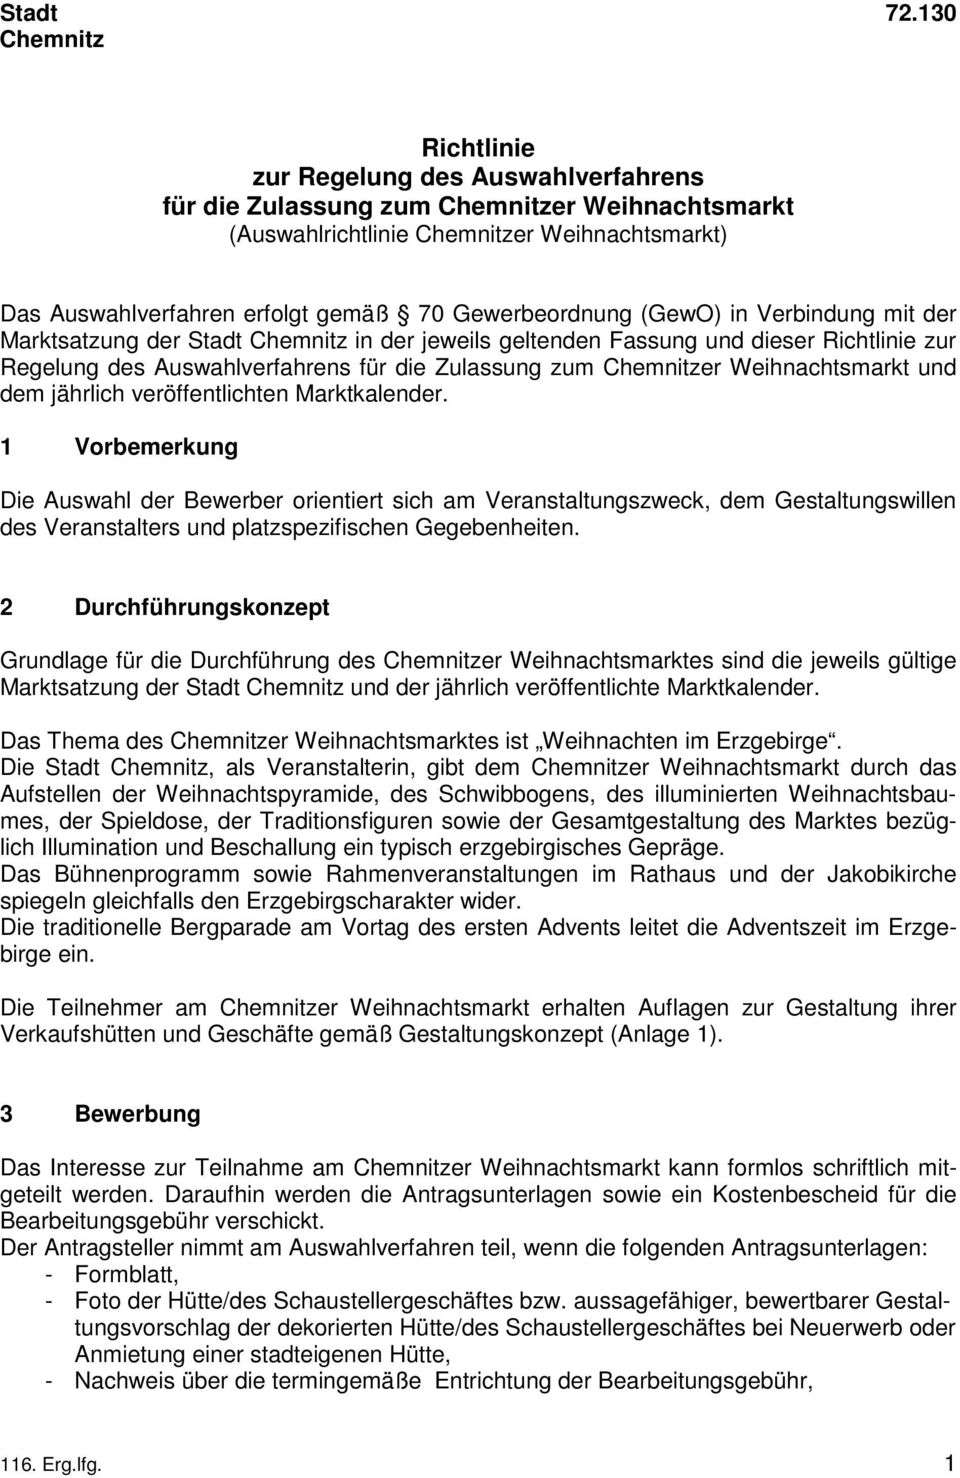 Gewerbeordnung (GewO) in Verbindung mit der Marktsatzung der Stadt Chemnitz in der jeweils geltenden Fassung und dieser Richtlinie zur Regelung des Auswahlverfahrens für die Zulassung zum Chemnitzer